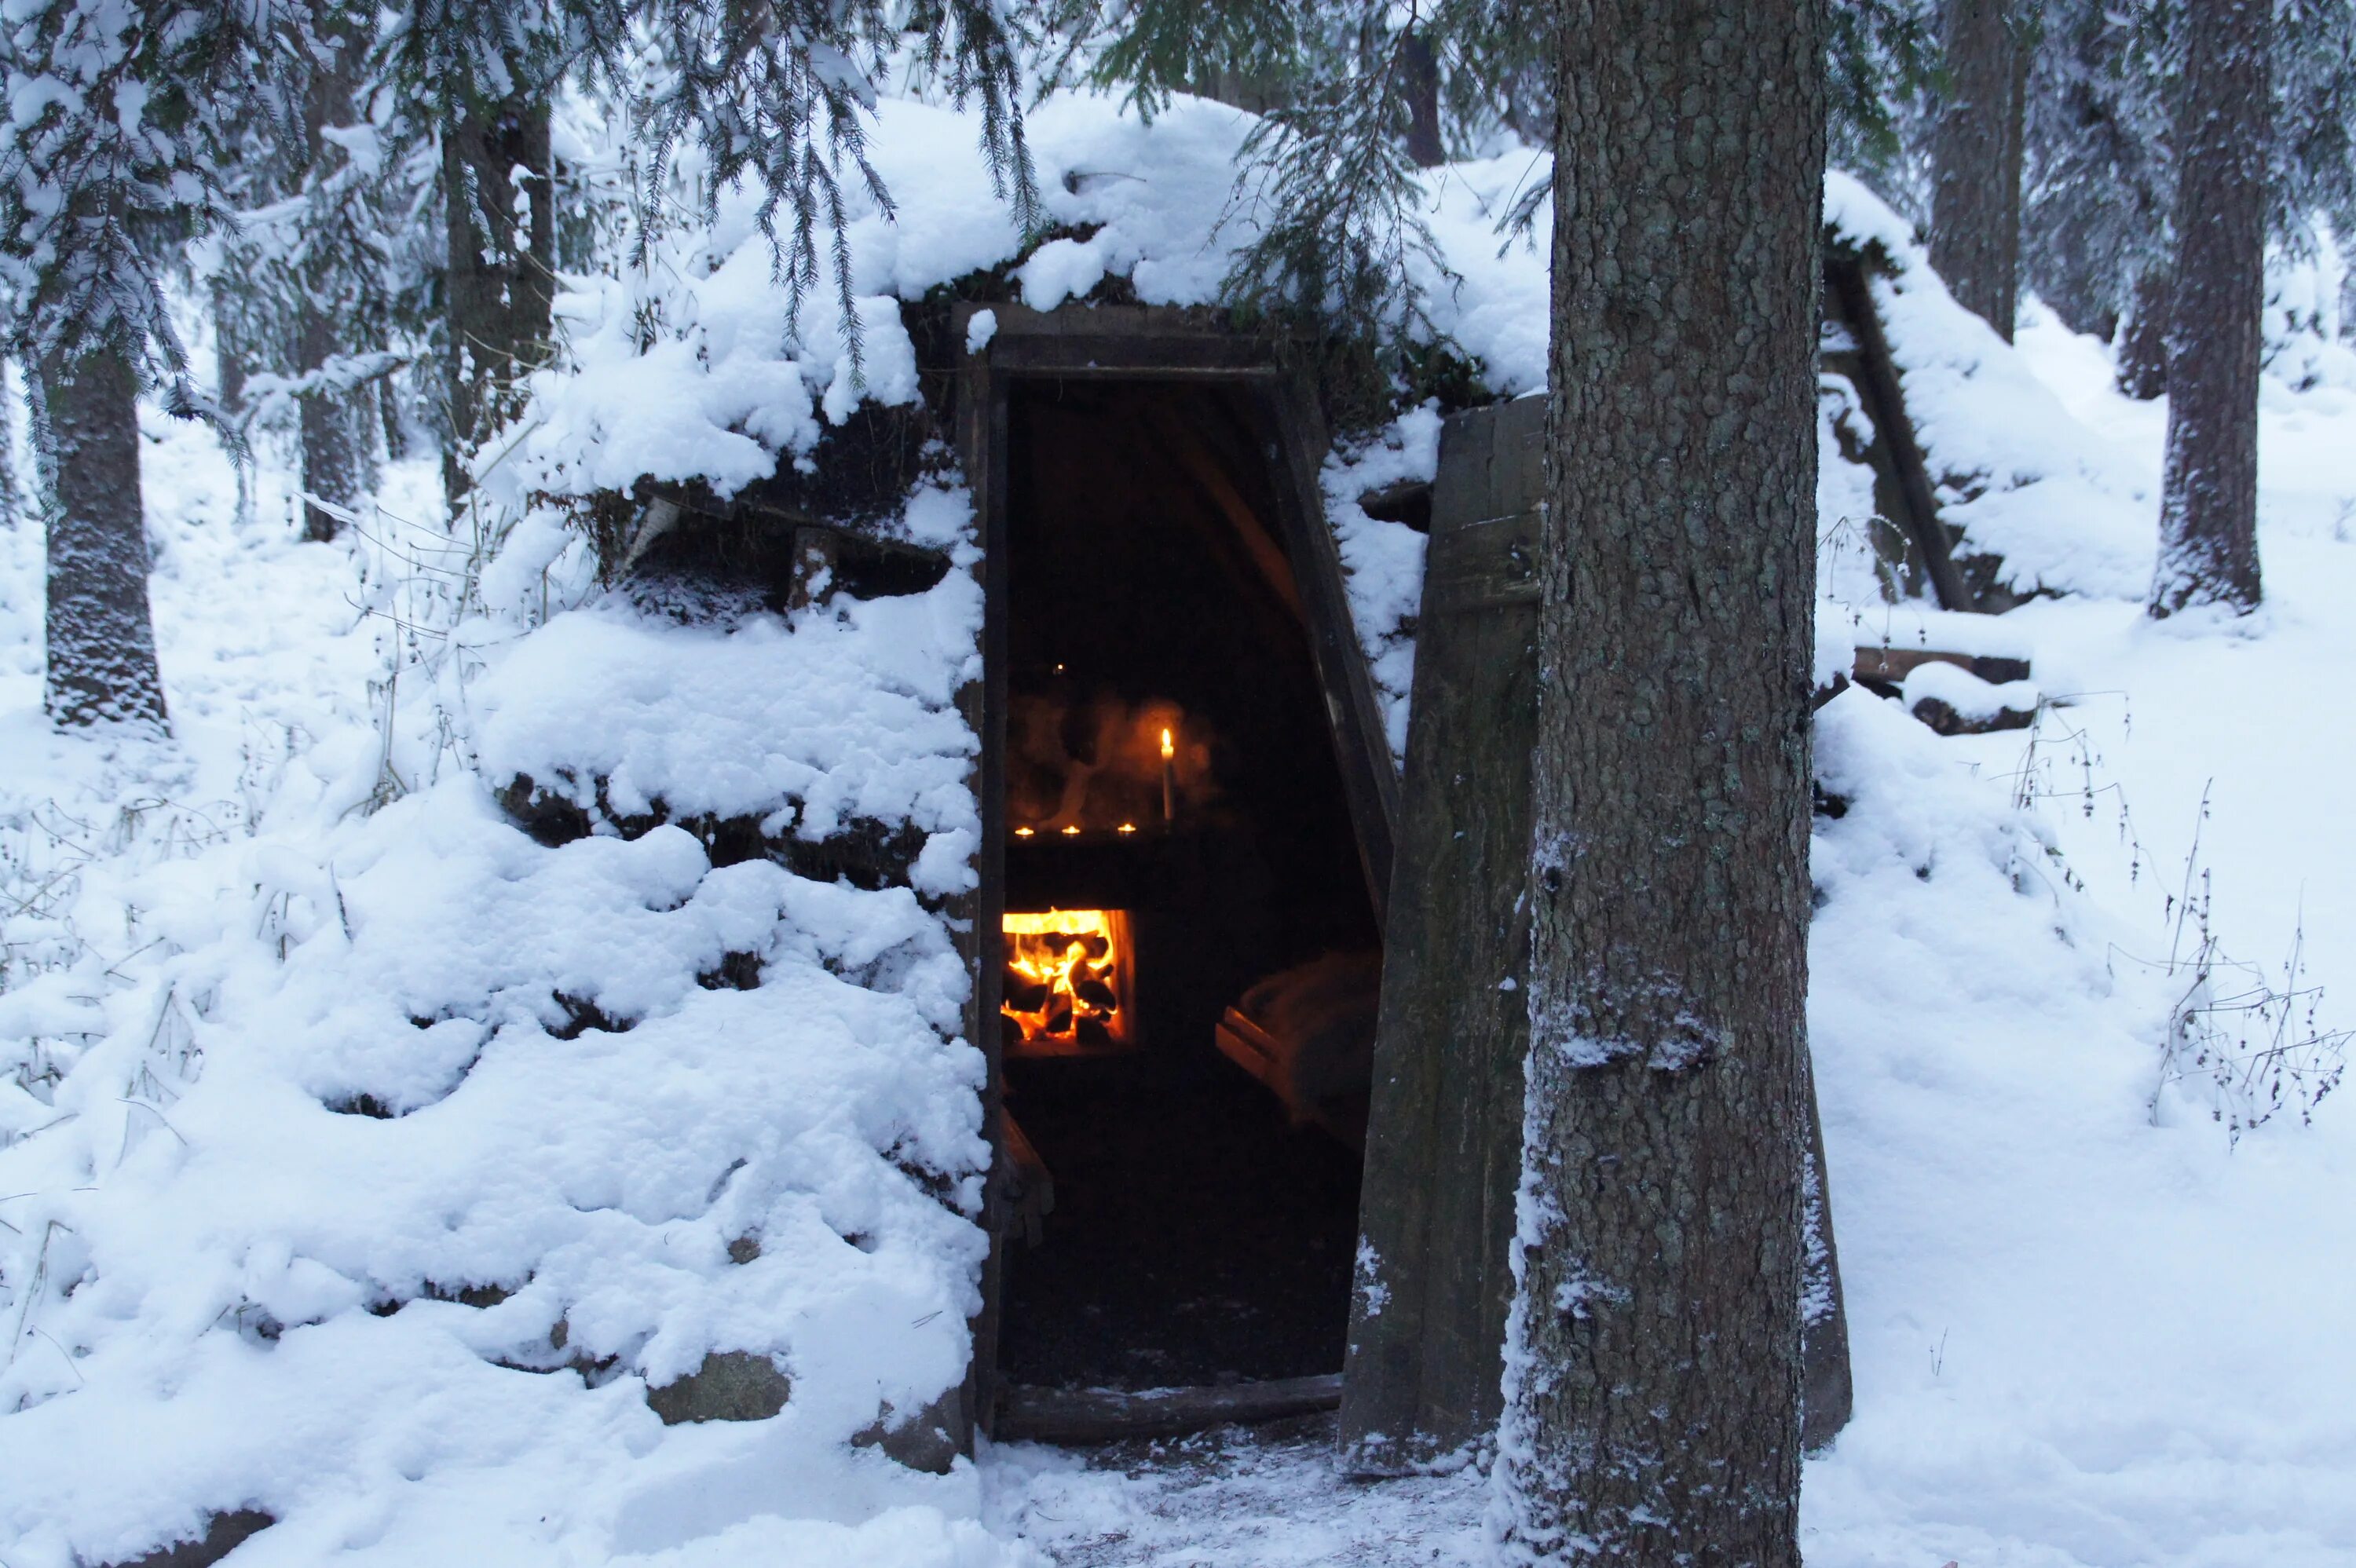 Отель Kolarbyn Ecolodge. Kolarbyn Ecolodge Швеция. Зимний домик с печкой в лесу. Землянка в лесу. Зайдешь в такую избушку зимой жилым